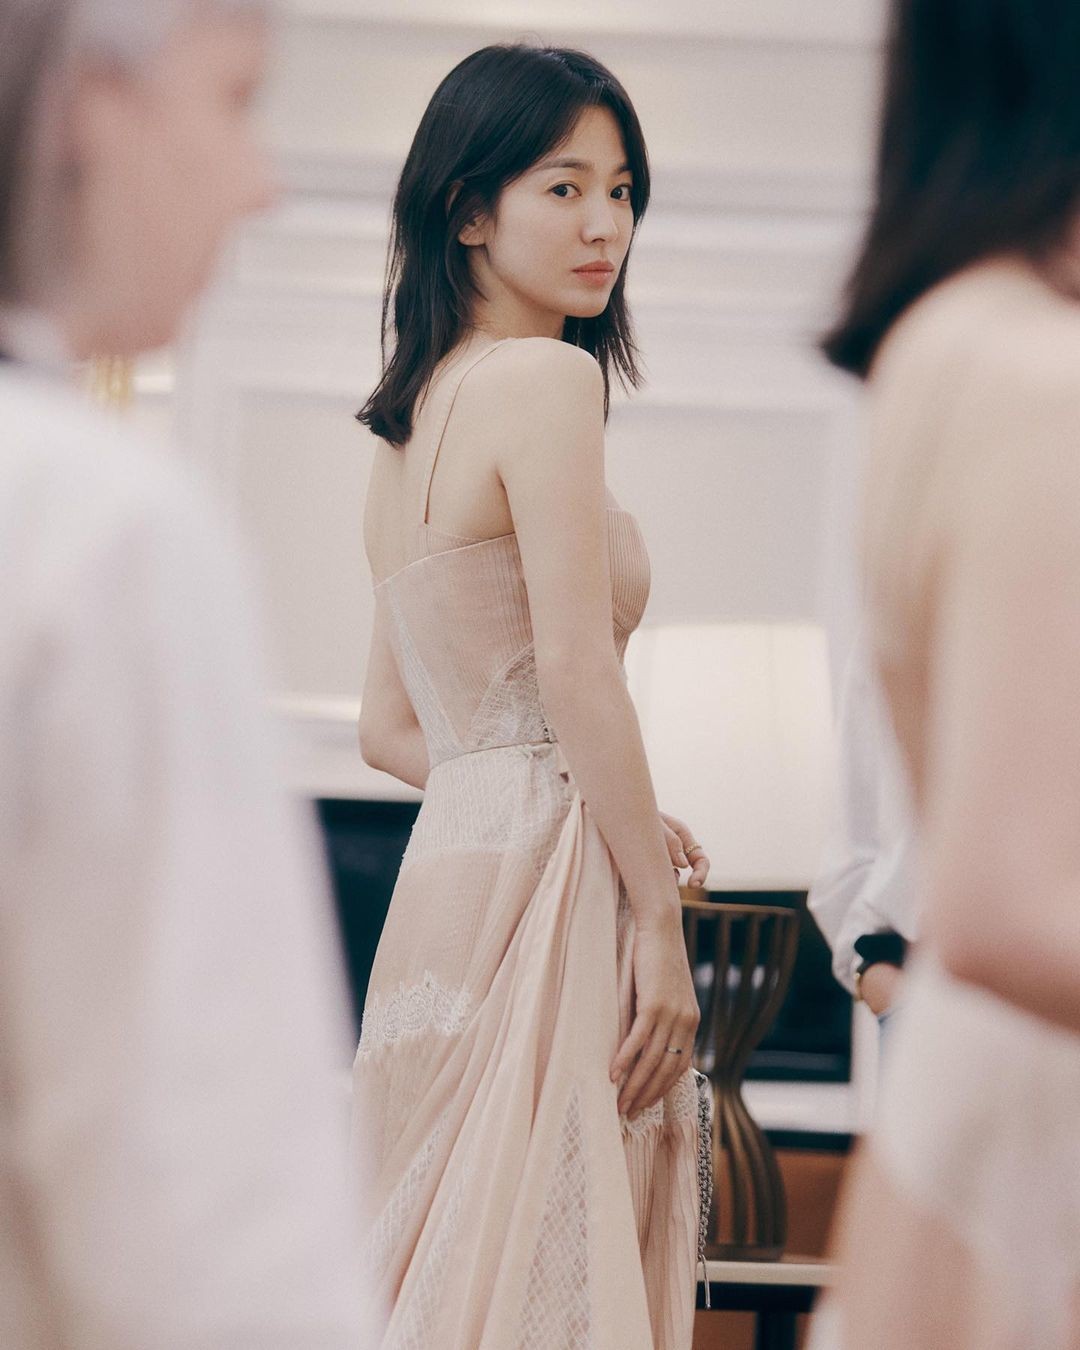 Tuy nhiên, phần đuôi tóc tết của Song Hye Kyo tại Met Gala chỉ là tóc giả. Chia sẻ ảnh chụp khoảnh khắc thử đồ lần cuối trước khi đi thảm đỏ sự kiện thời trang, Song Hye Kyo cho thấy cô có mái tóc thật dài qua vai, tỉa layer tạo vẻ mềm mại, kiểu mái bay b